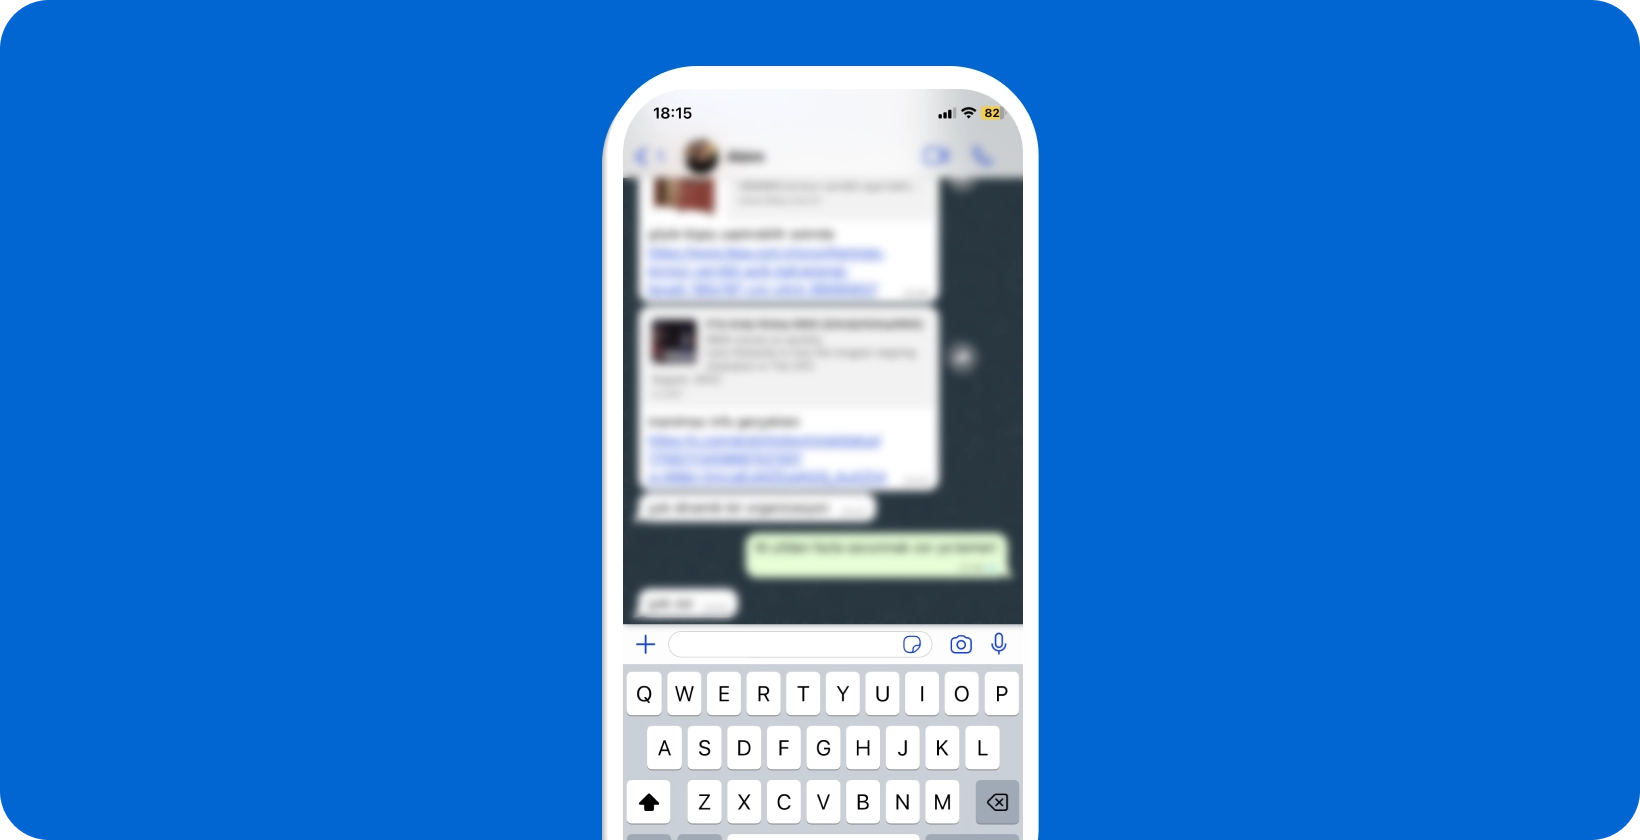 智能手机显示一个活跃的WhatsApp对话，键盘打开，准备进行语音听写。